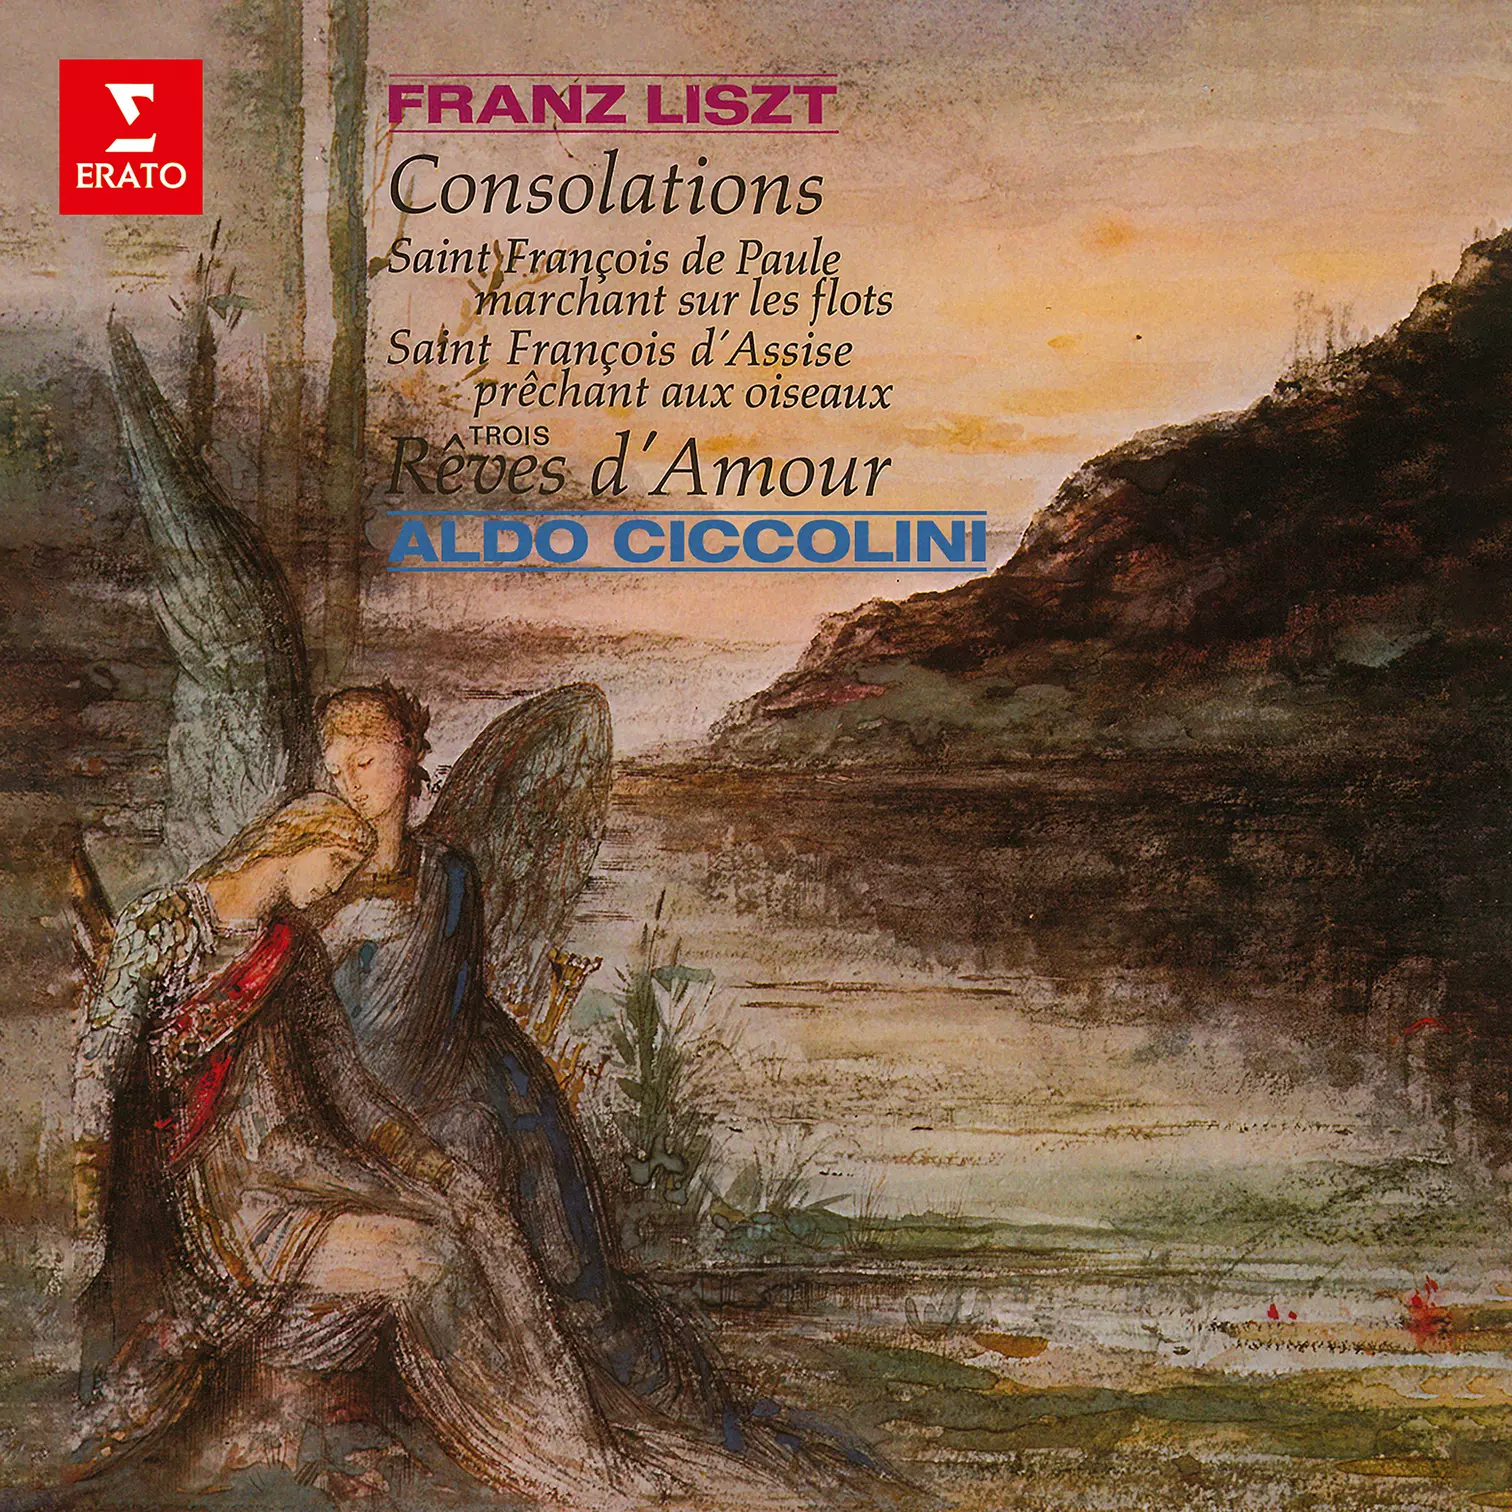 Liszt: Consolations, Légendes & Rêves d’amour